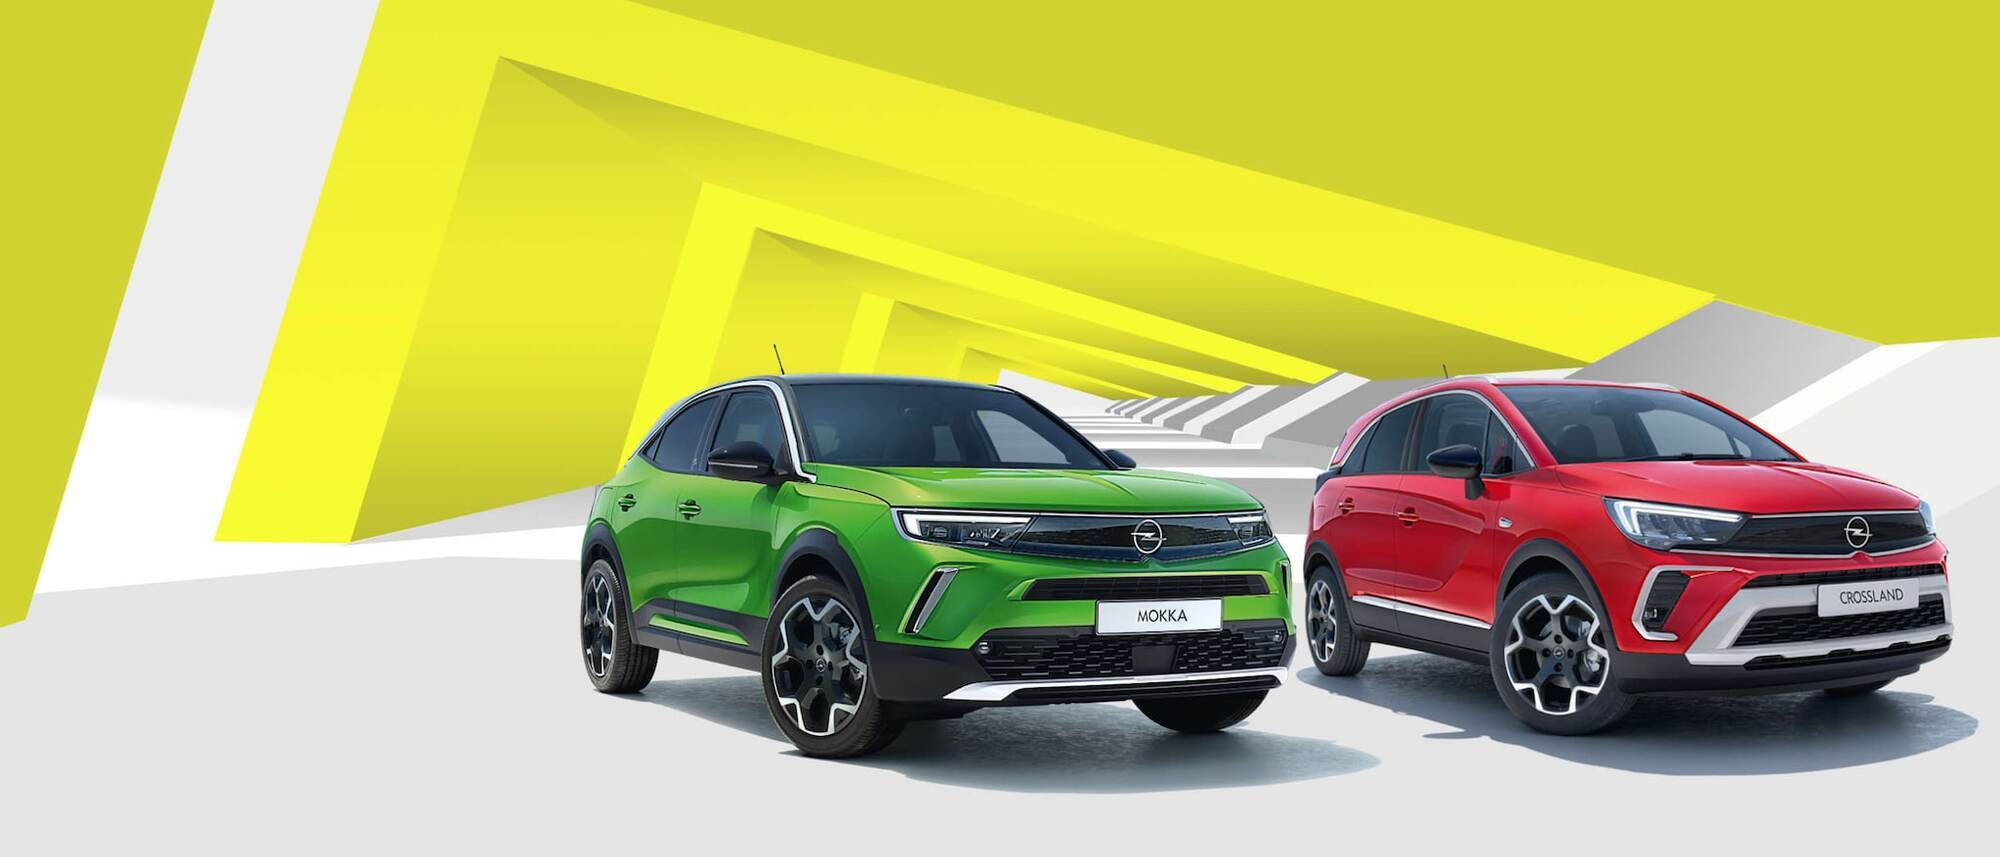 По итогам января в Украине было реализовано 98 автомобилей Opel